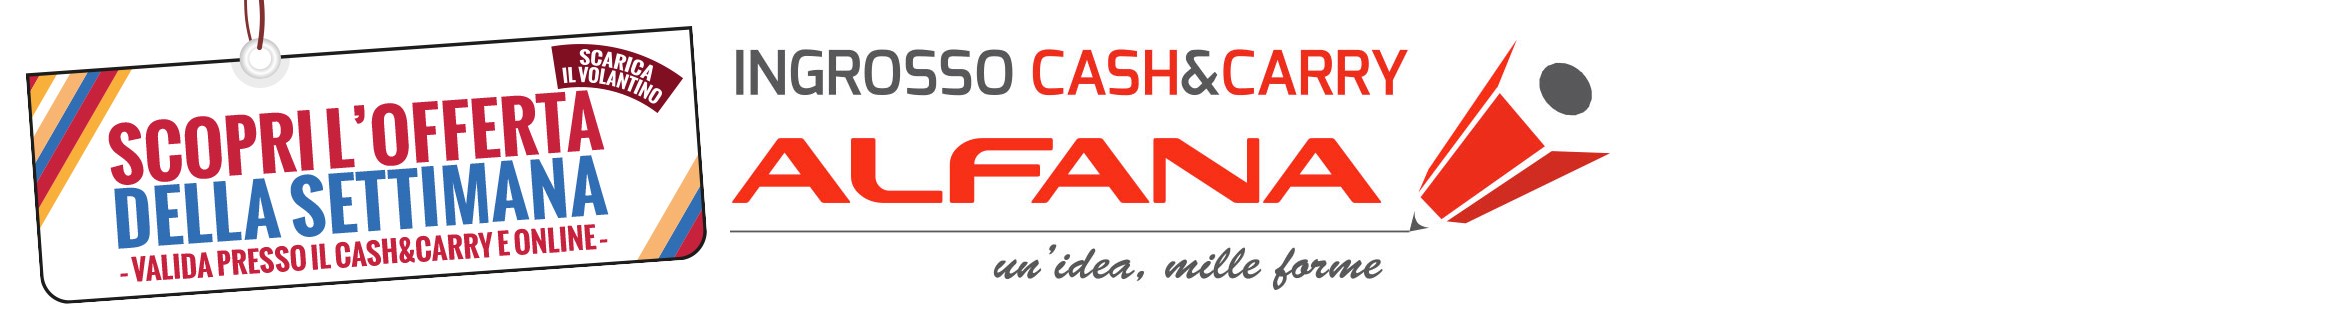 Alfana Cash & Carry